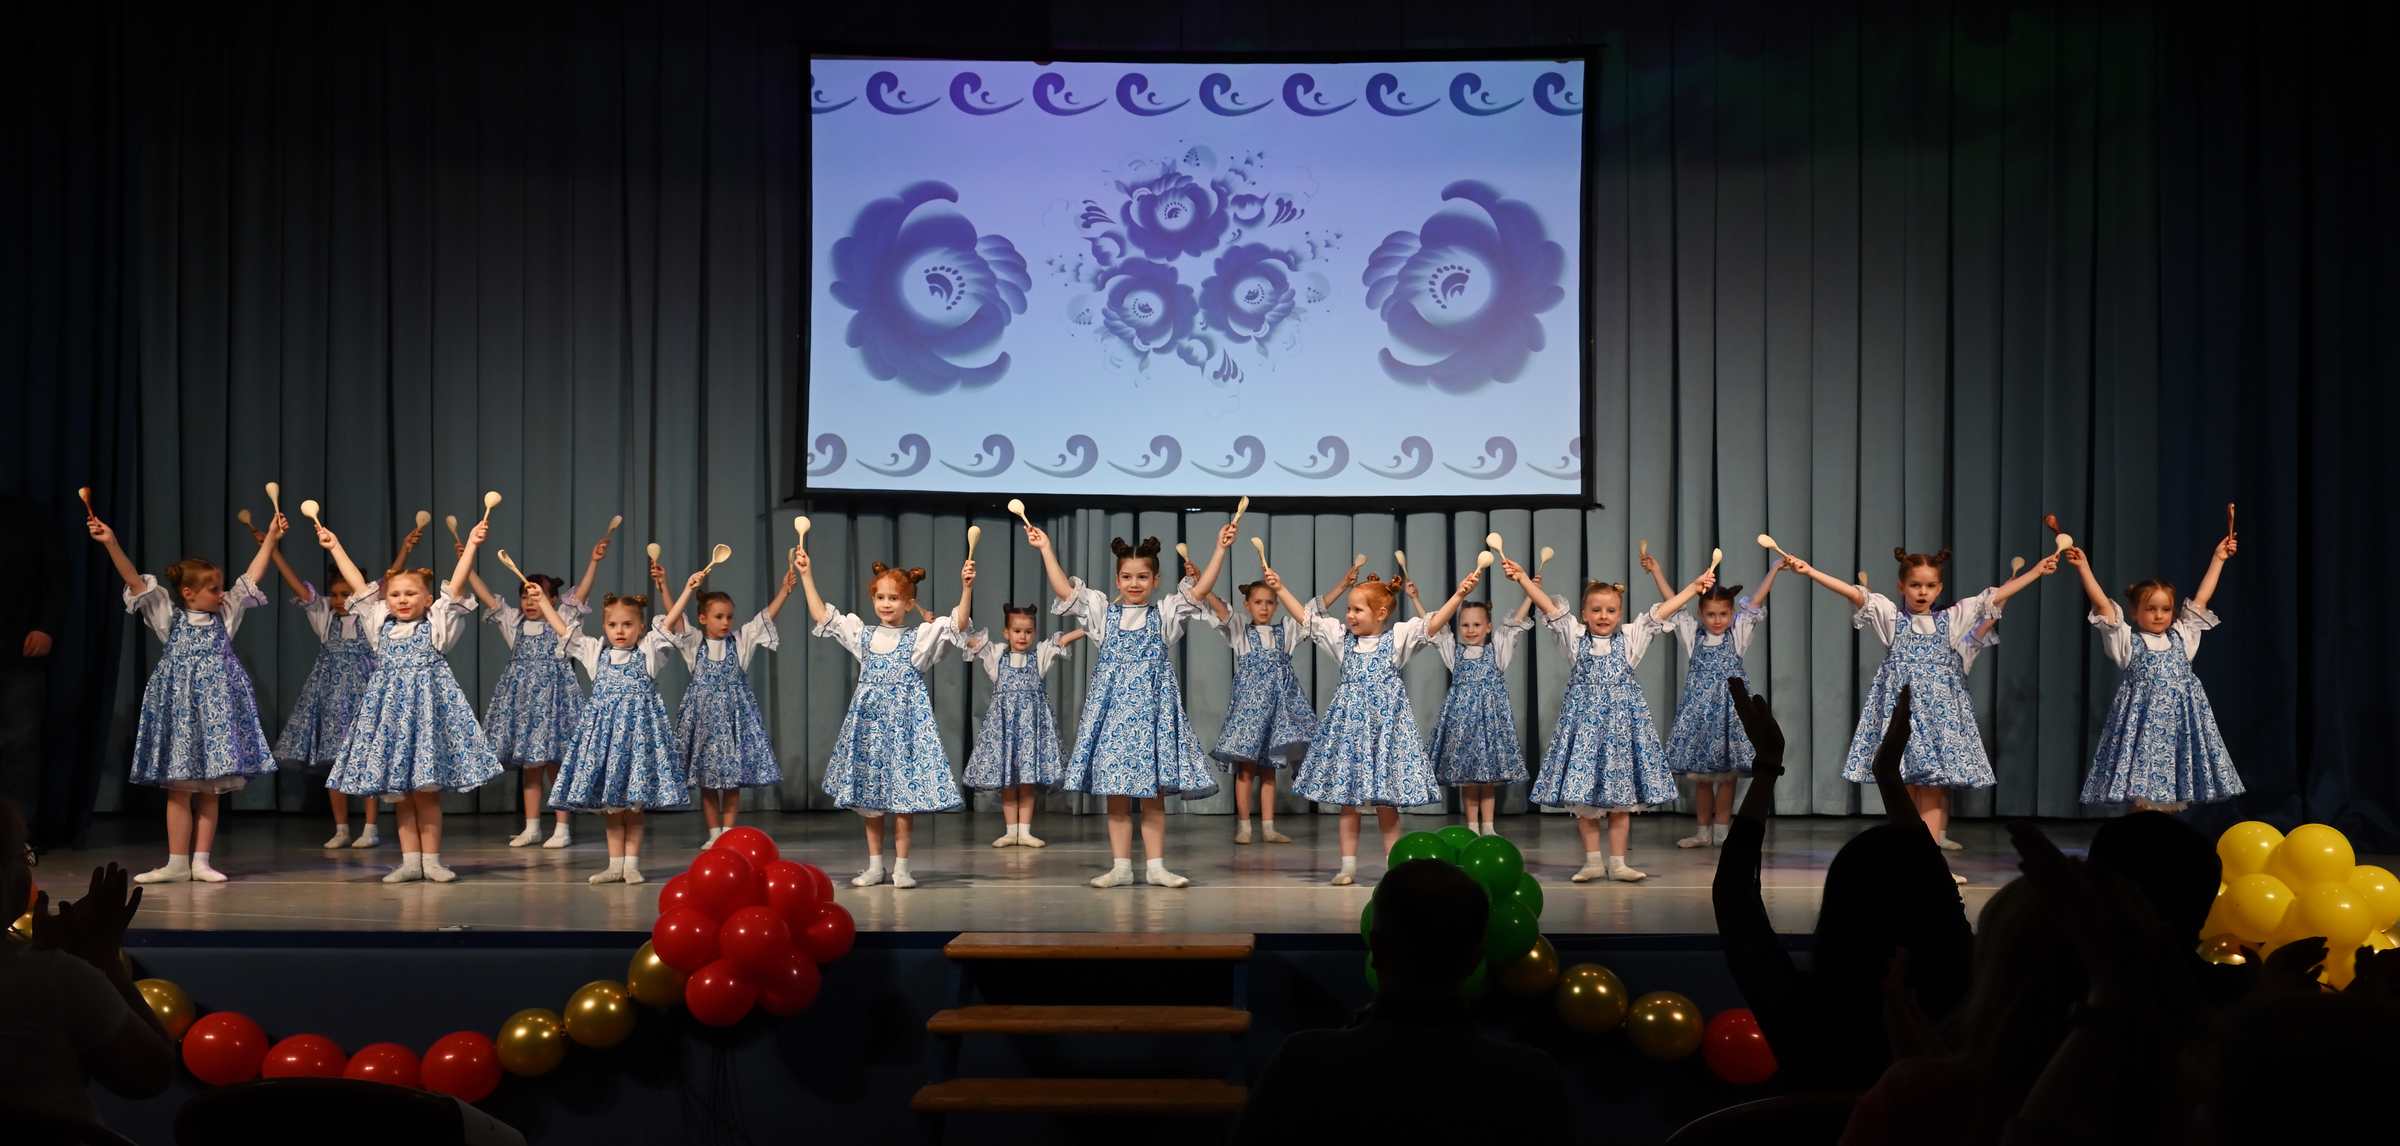 Отчётный концерт детского хореографического коллектива Солнцецвет. Русский танец с ложками.